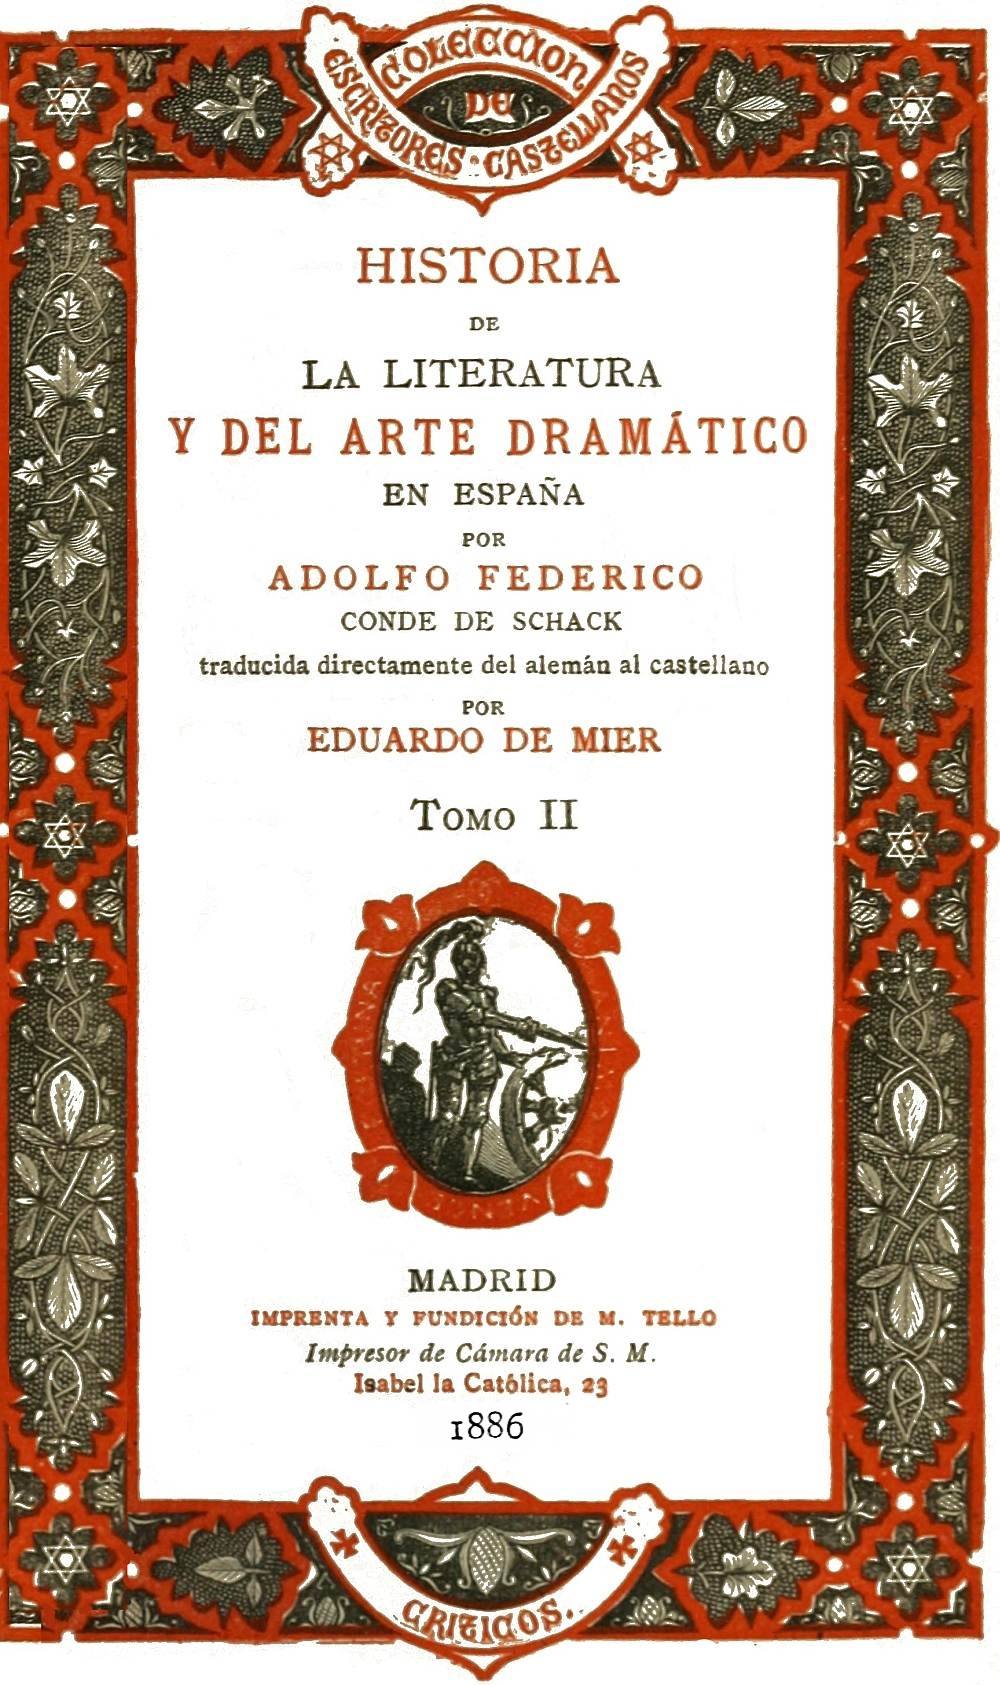 The Project Gutenberg eBook of Historia de la literatura y del arte  dram�tico en Espa�a, tomo II, by Adolf Friedrich von Schack